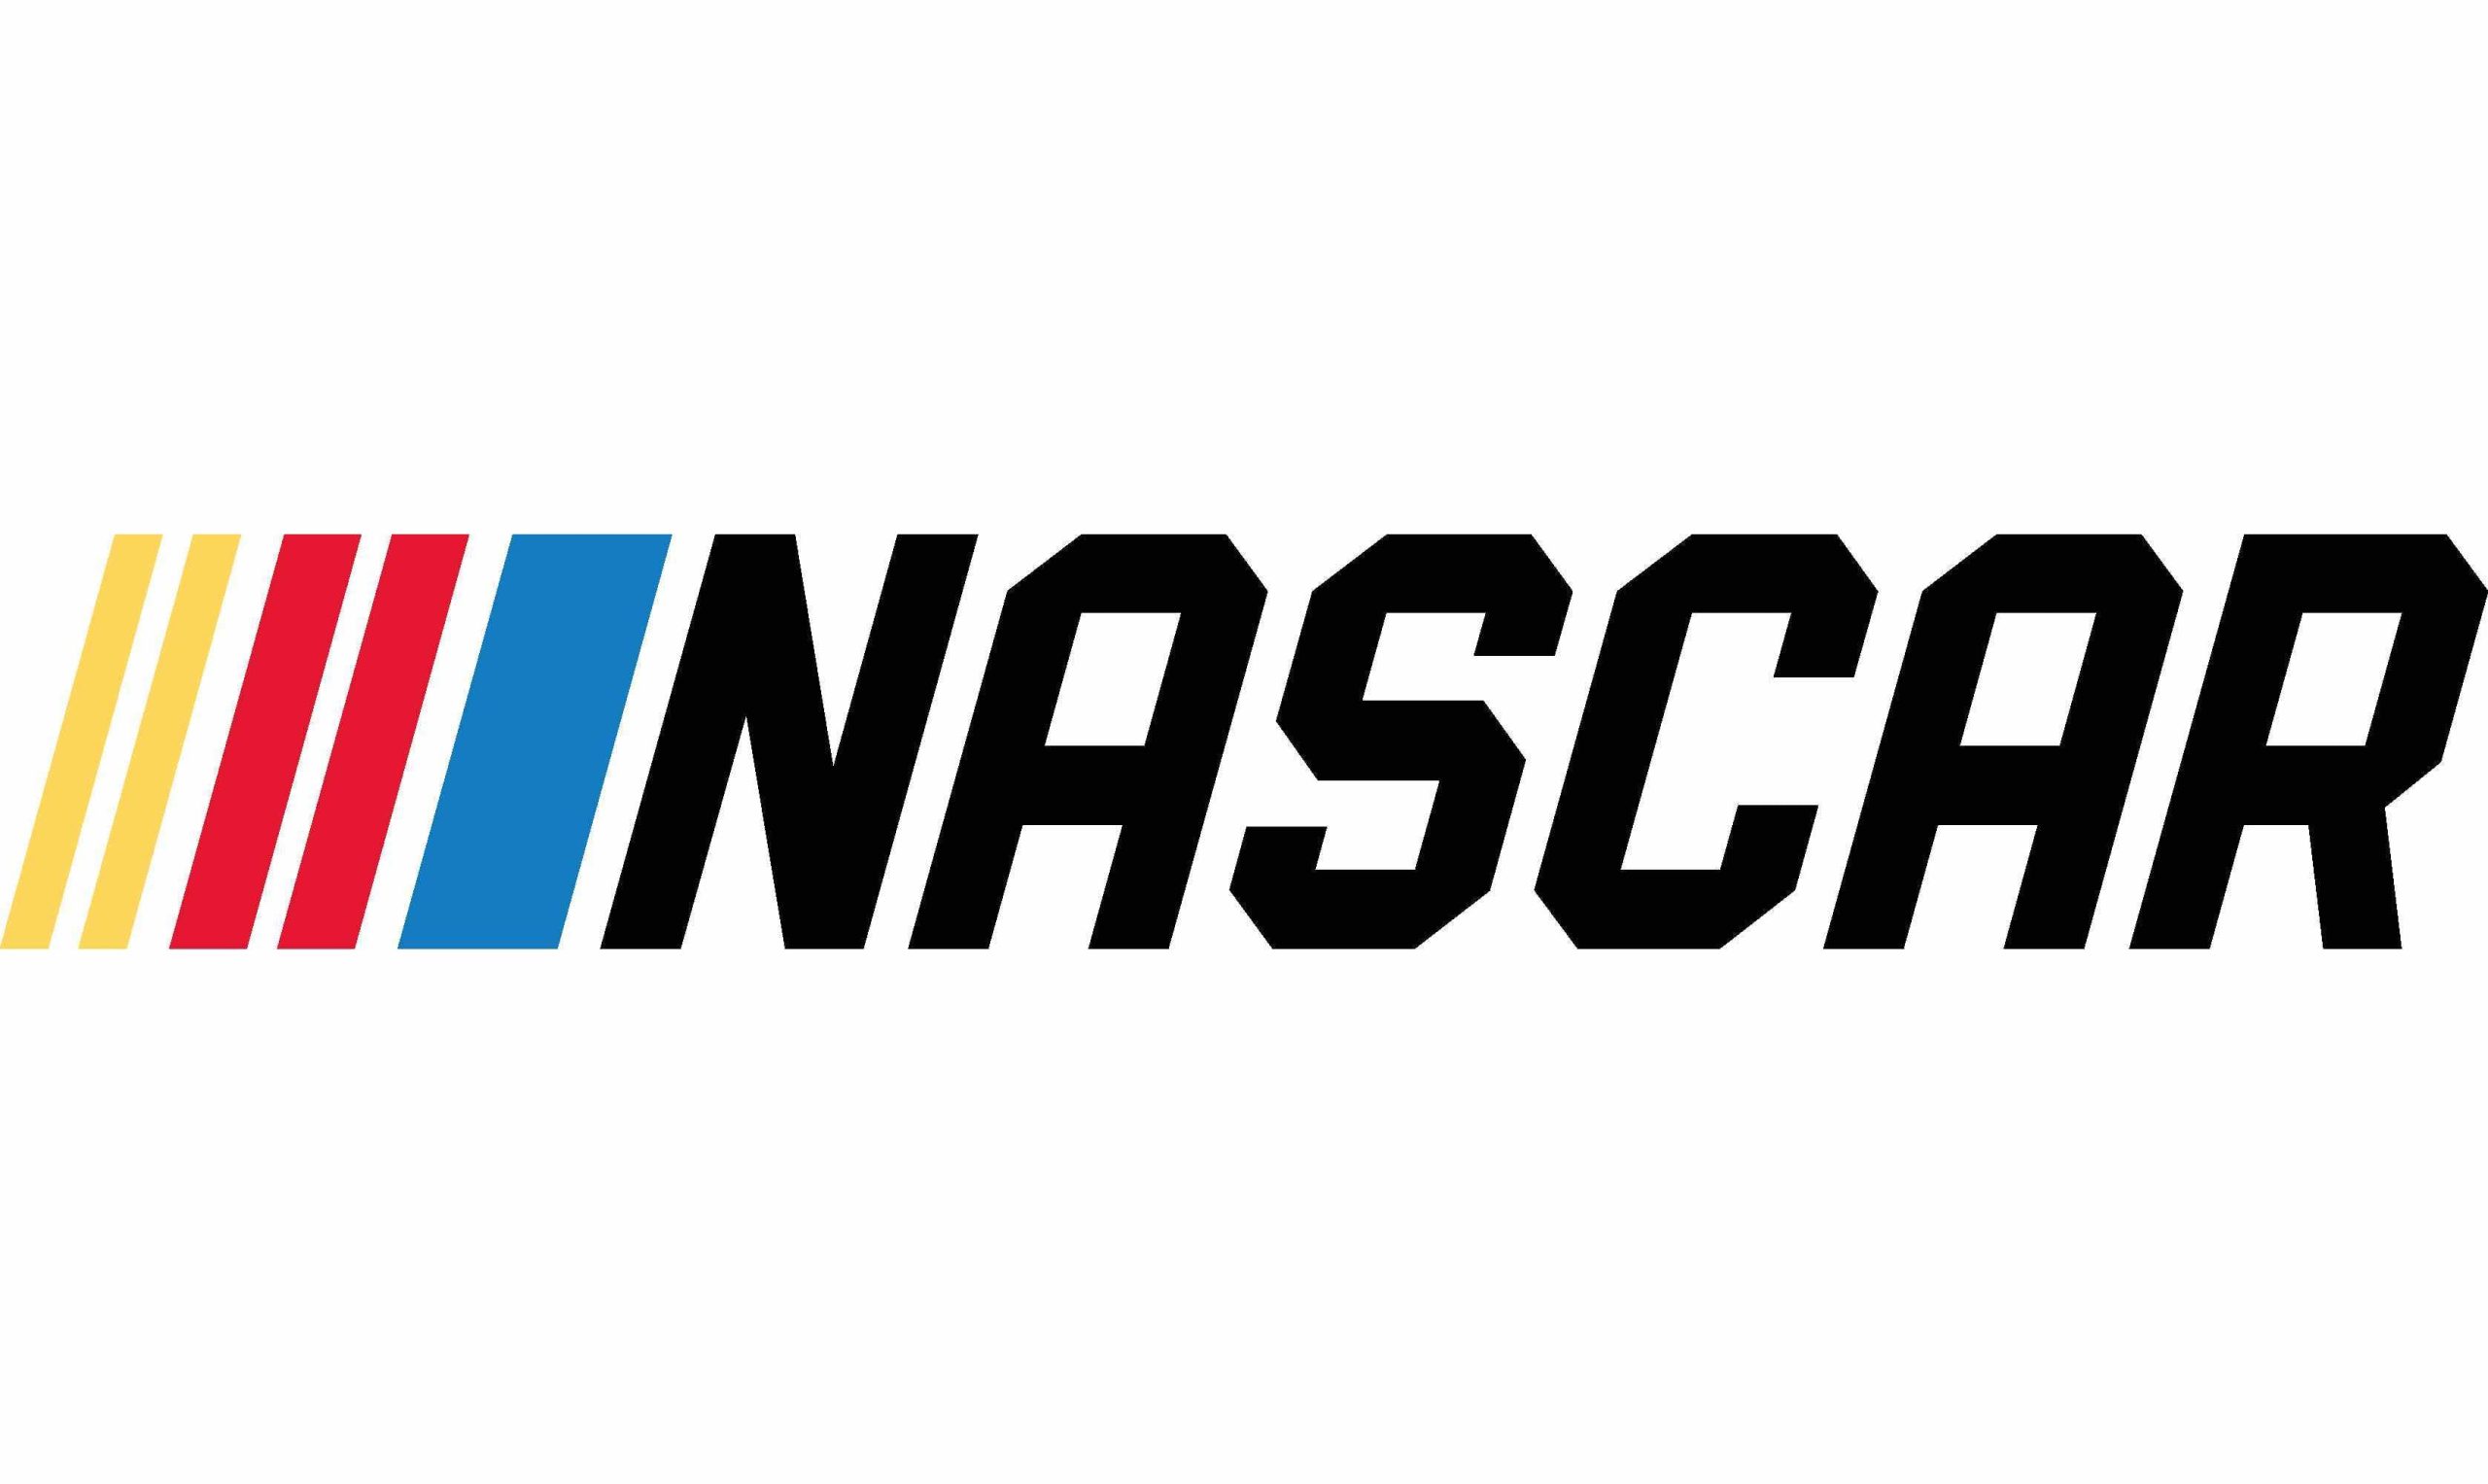 https://martinbriley.com/wp-content/uploads/2021/11/Nascar-logo-scaled.jpg